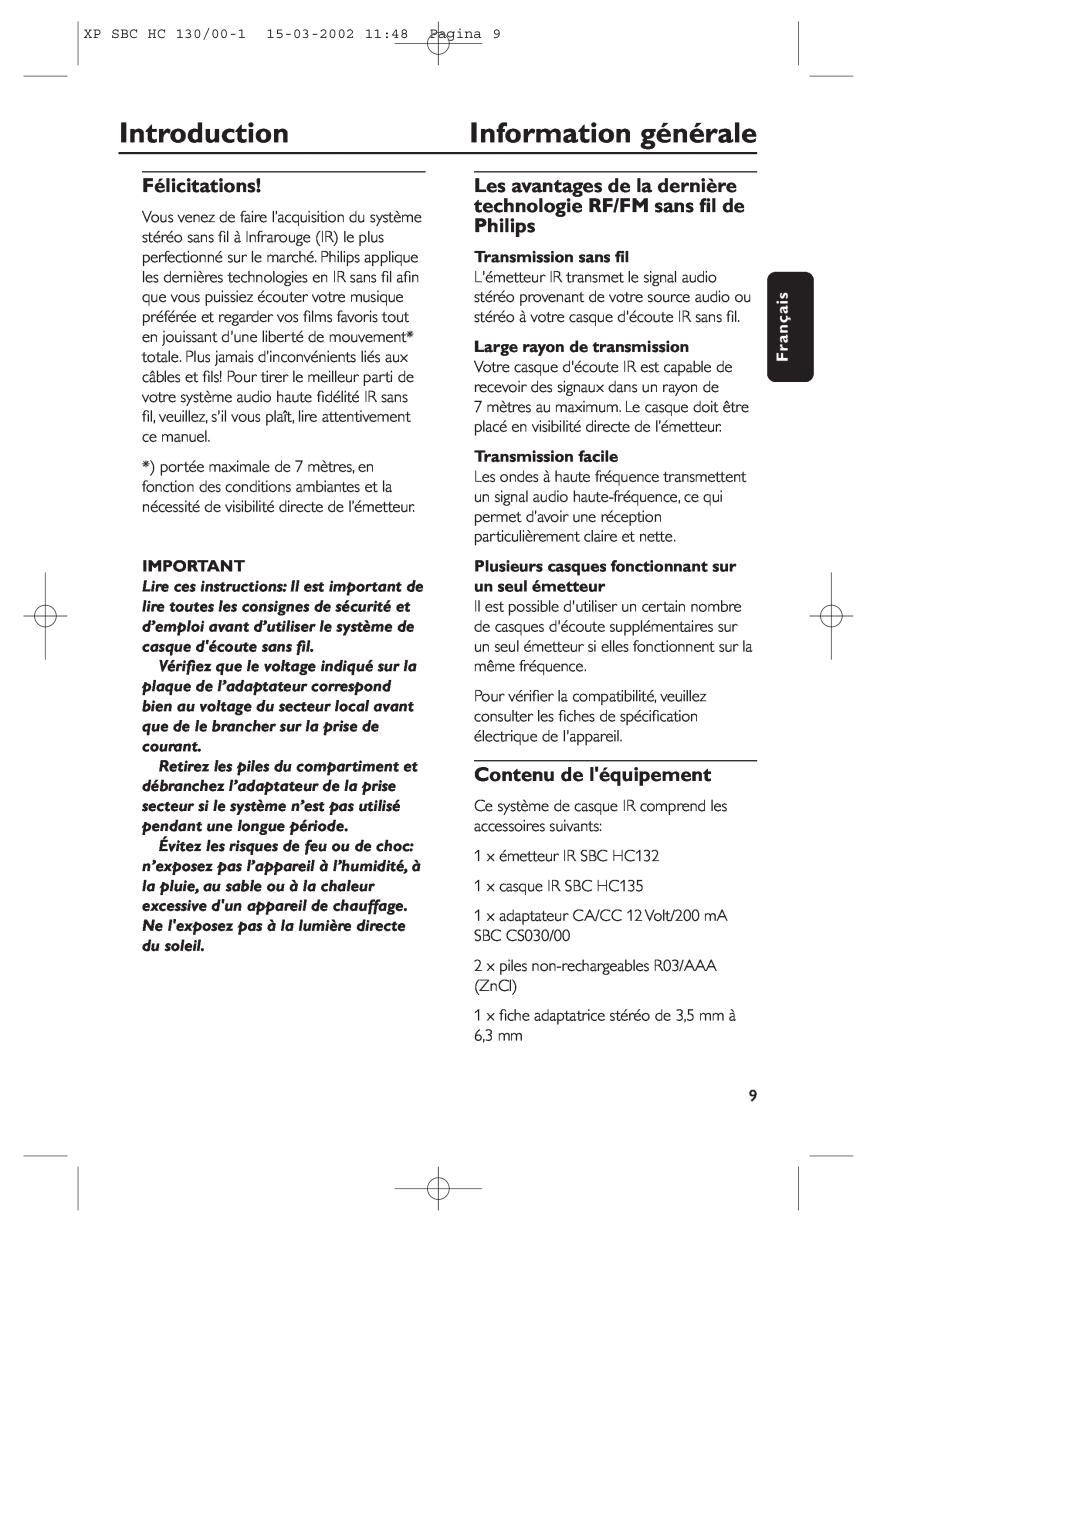 Philips SBC HC130 manual Information générale, Introduction, Félicitations, Contenu de léquipement, Transmission sans ﬁl 